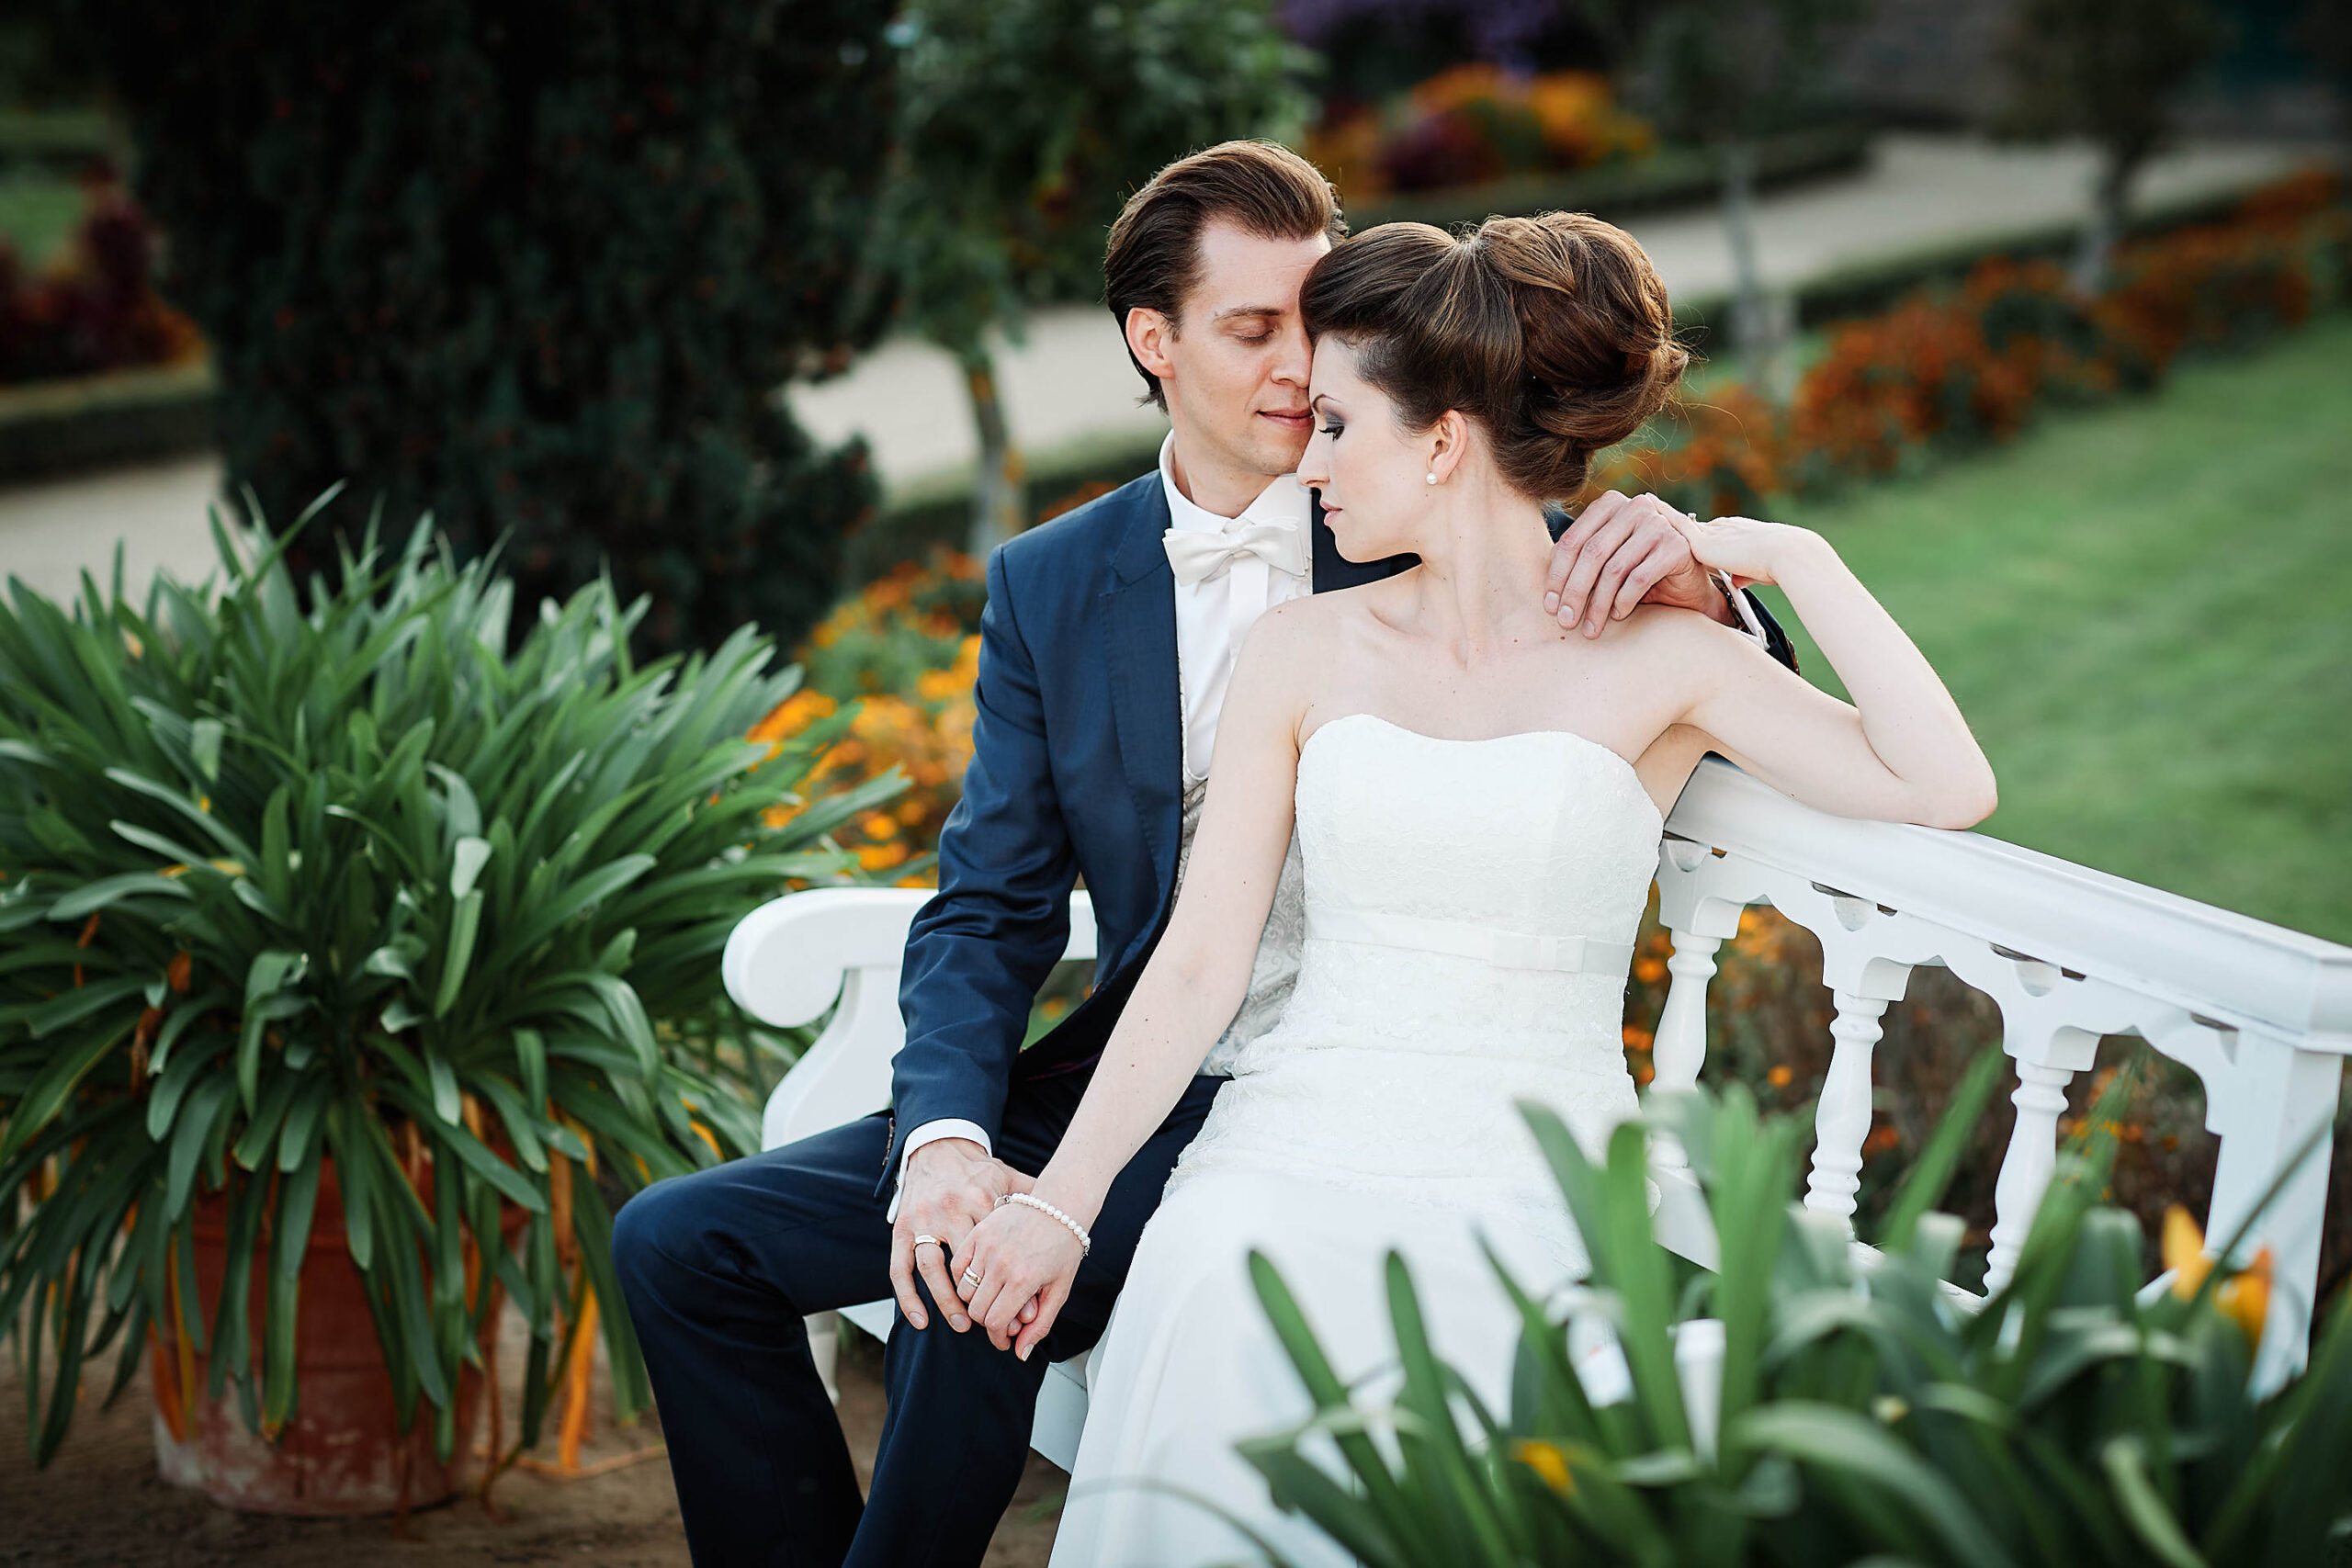 Onelovephoto Hochzeitsfotografie aus Mannheim. Als Hochzeitsfotograf in Darmstadt fotografierte er ein Brautpaar, das auf einer Bank in einem Garten saß. Lebendige Hochzeitsreportagen für jedes Budget.